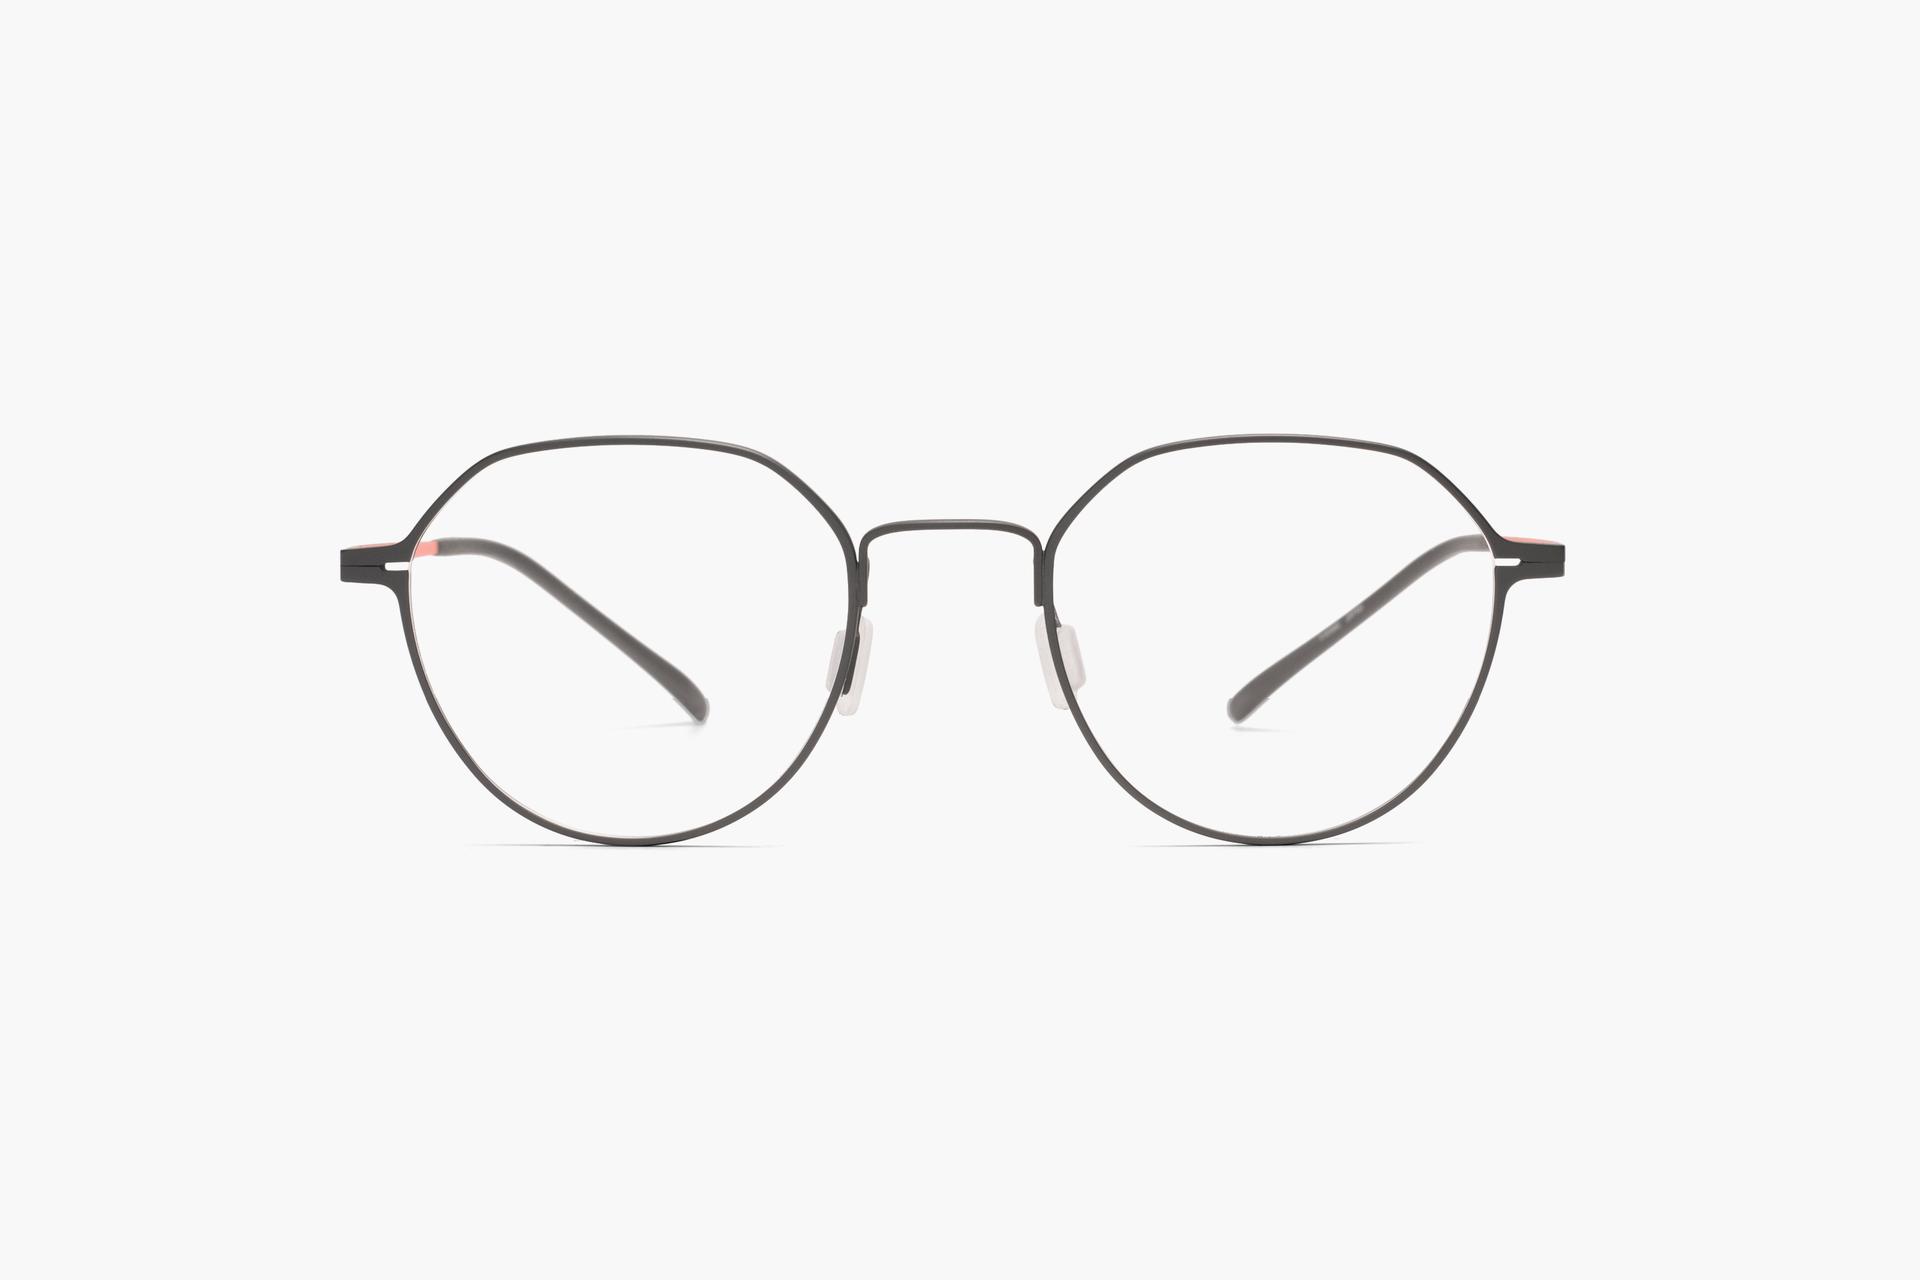 Potentieel Aannemelijk Doe alles met mijn kracht 4241 by MODO | Try on glasses online & find optician | FAVR